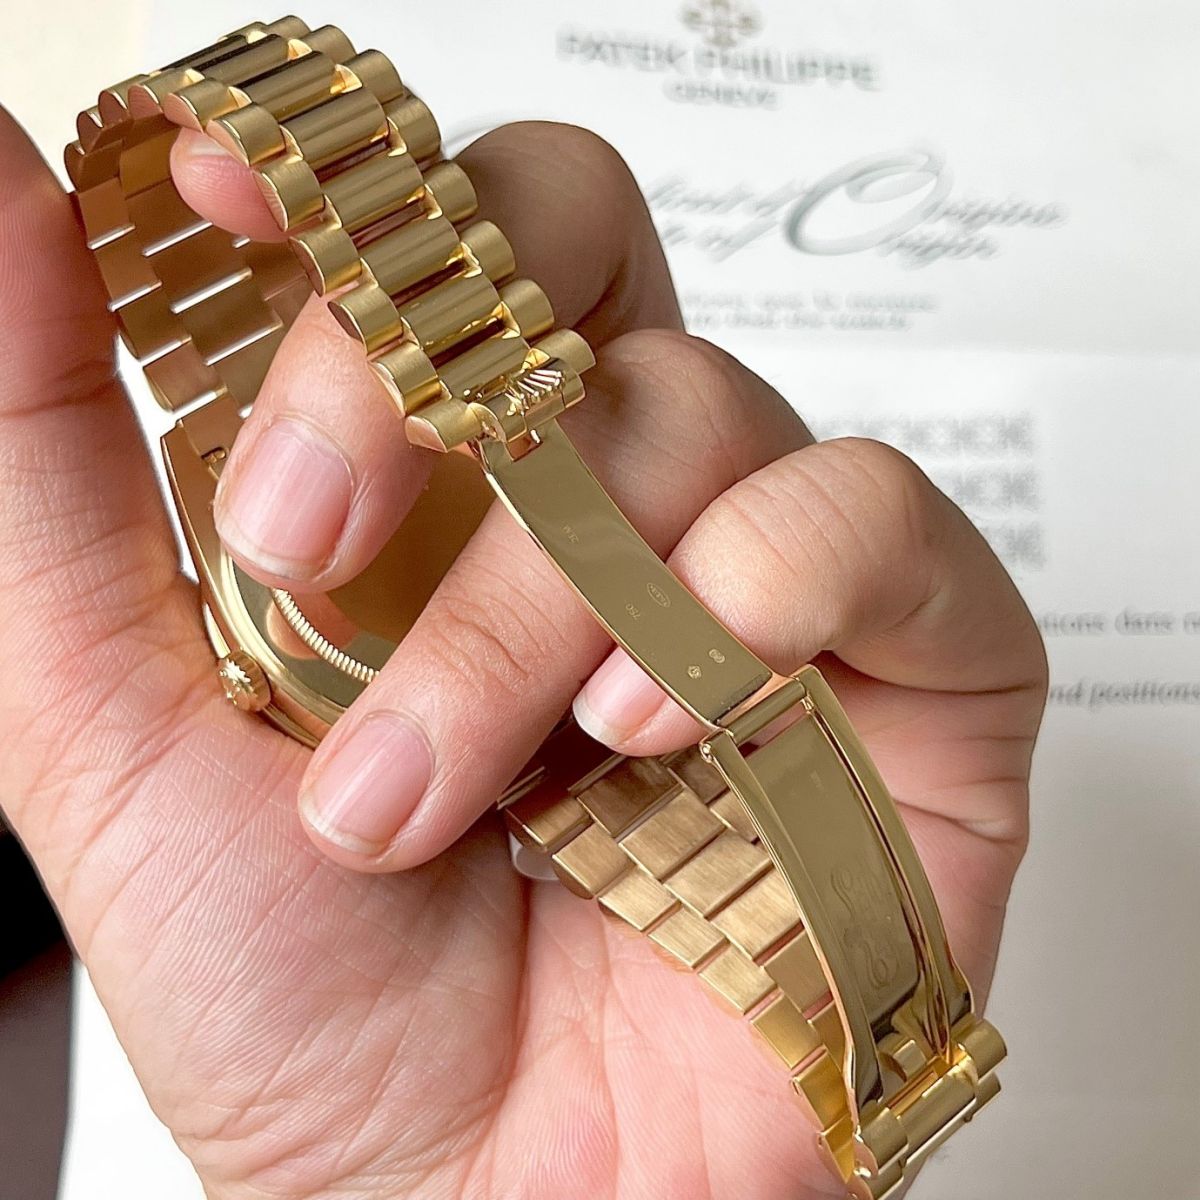 Vàng 750 chiếm 75% trên đồng hồ Rolex fake 1